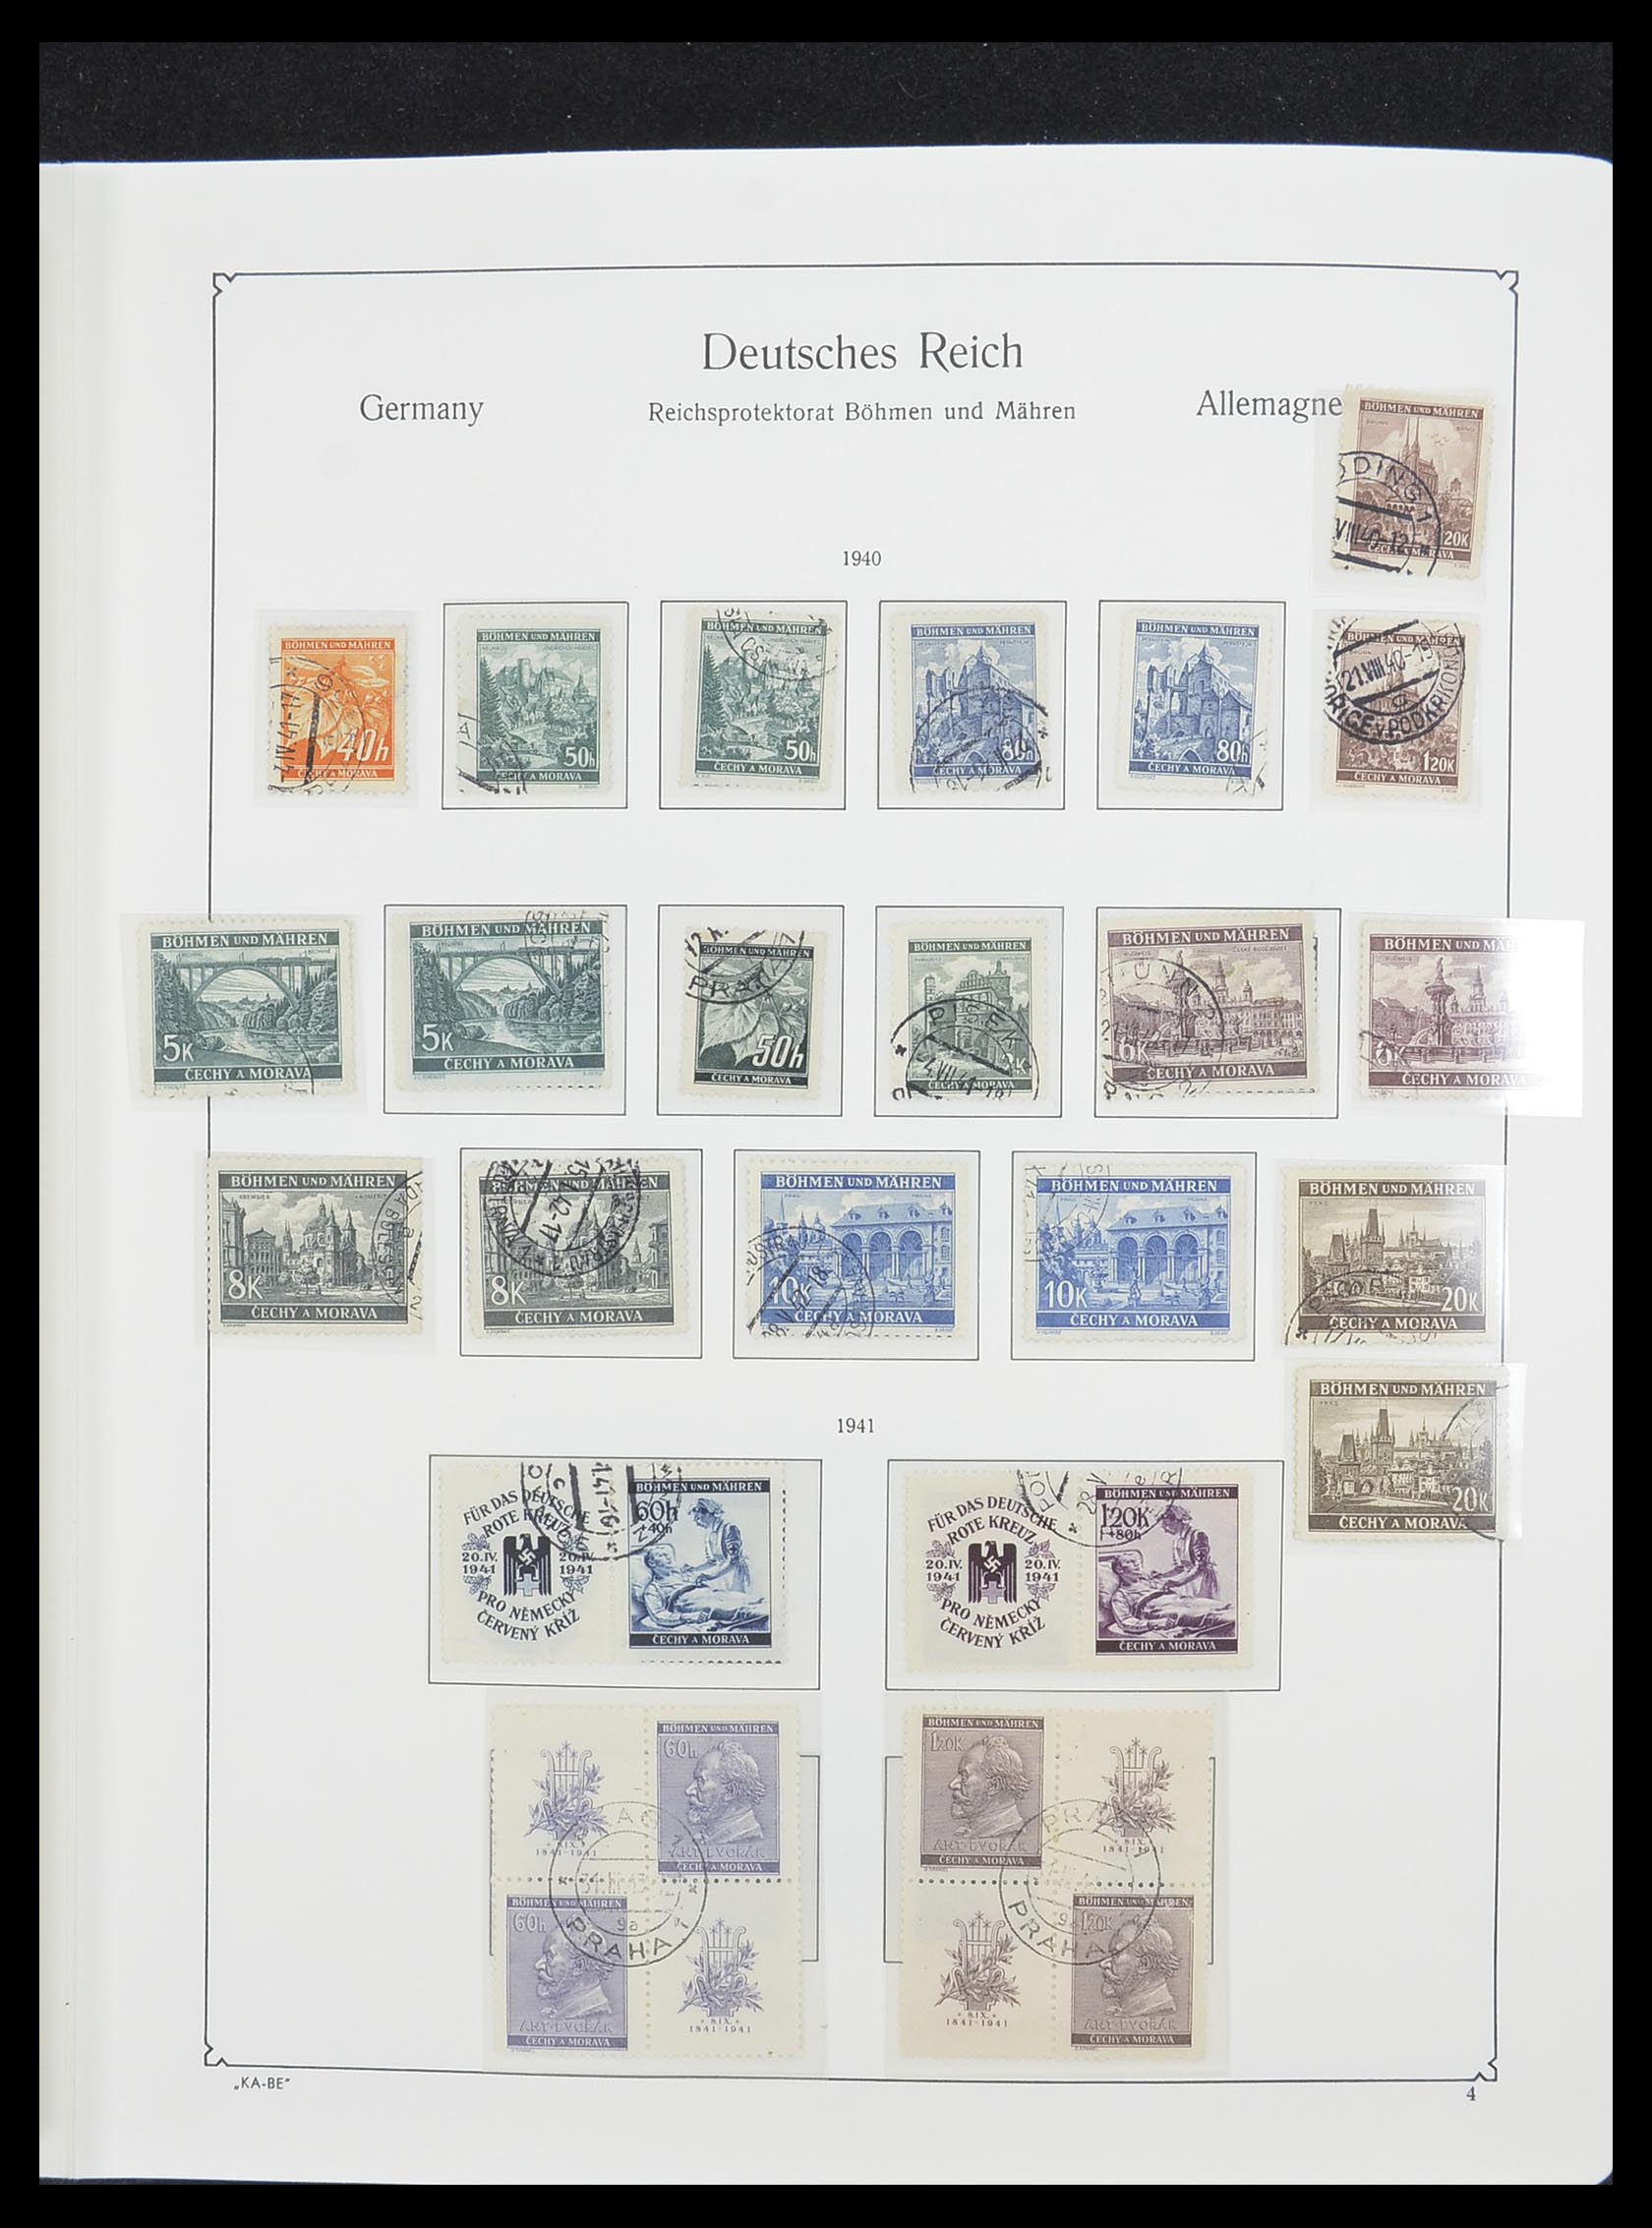 33360 006 - Stamp collection 33360 German occupation 2nd world war 1939-1945.